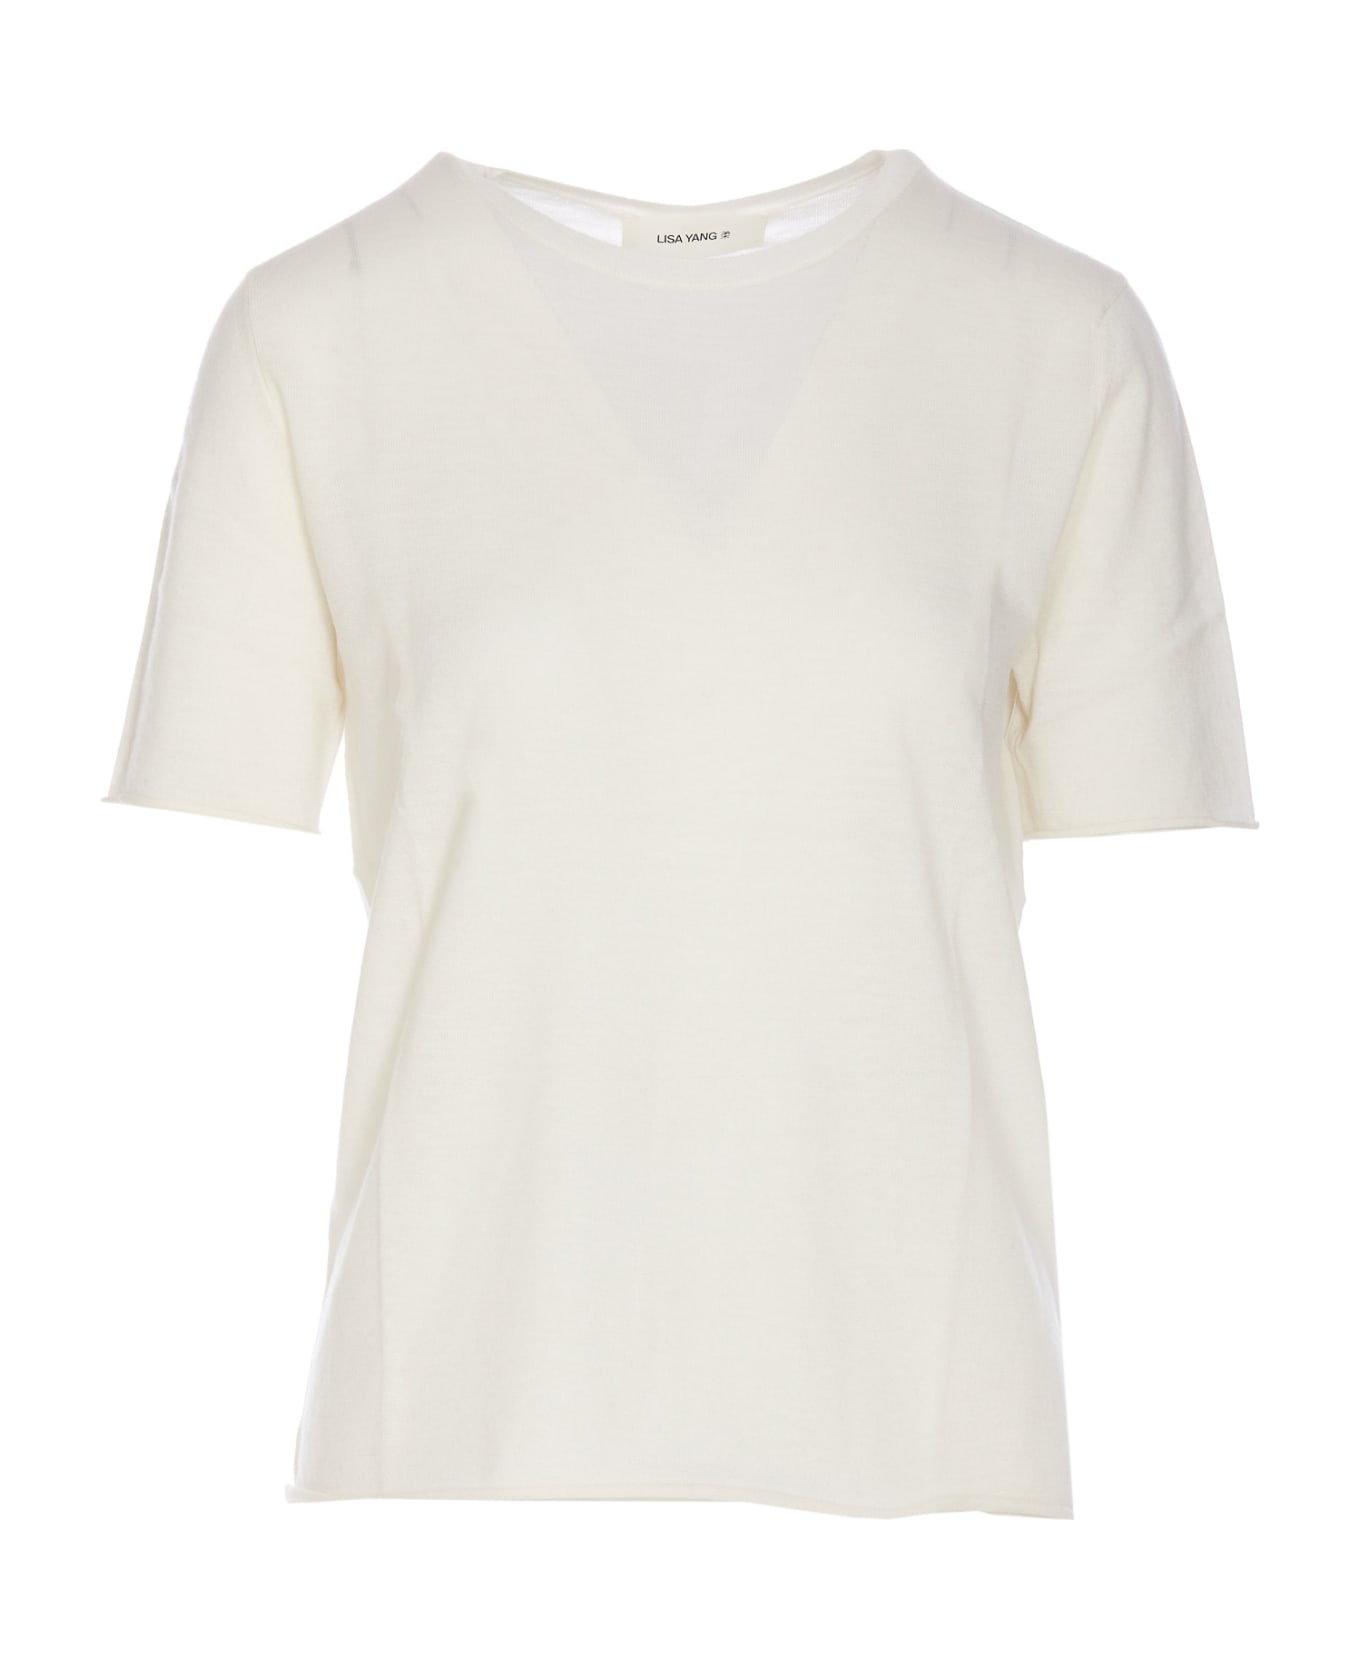 Lisa Yang Ari T-shirt - White